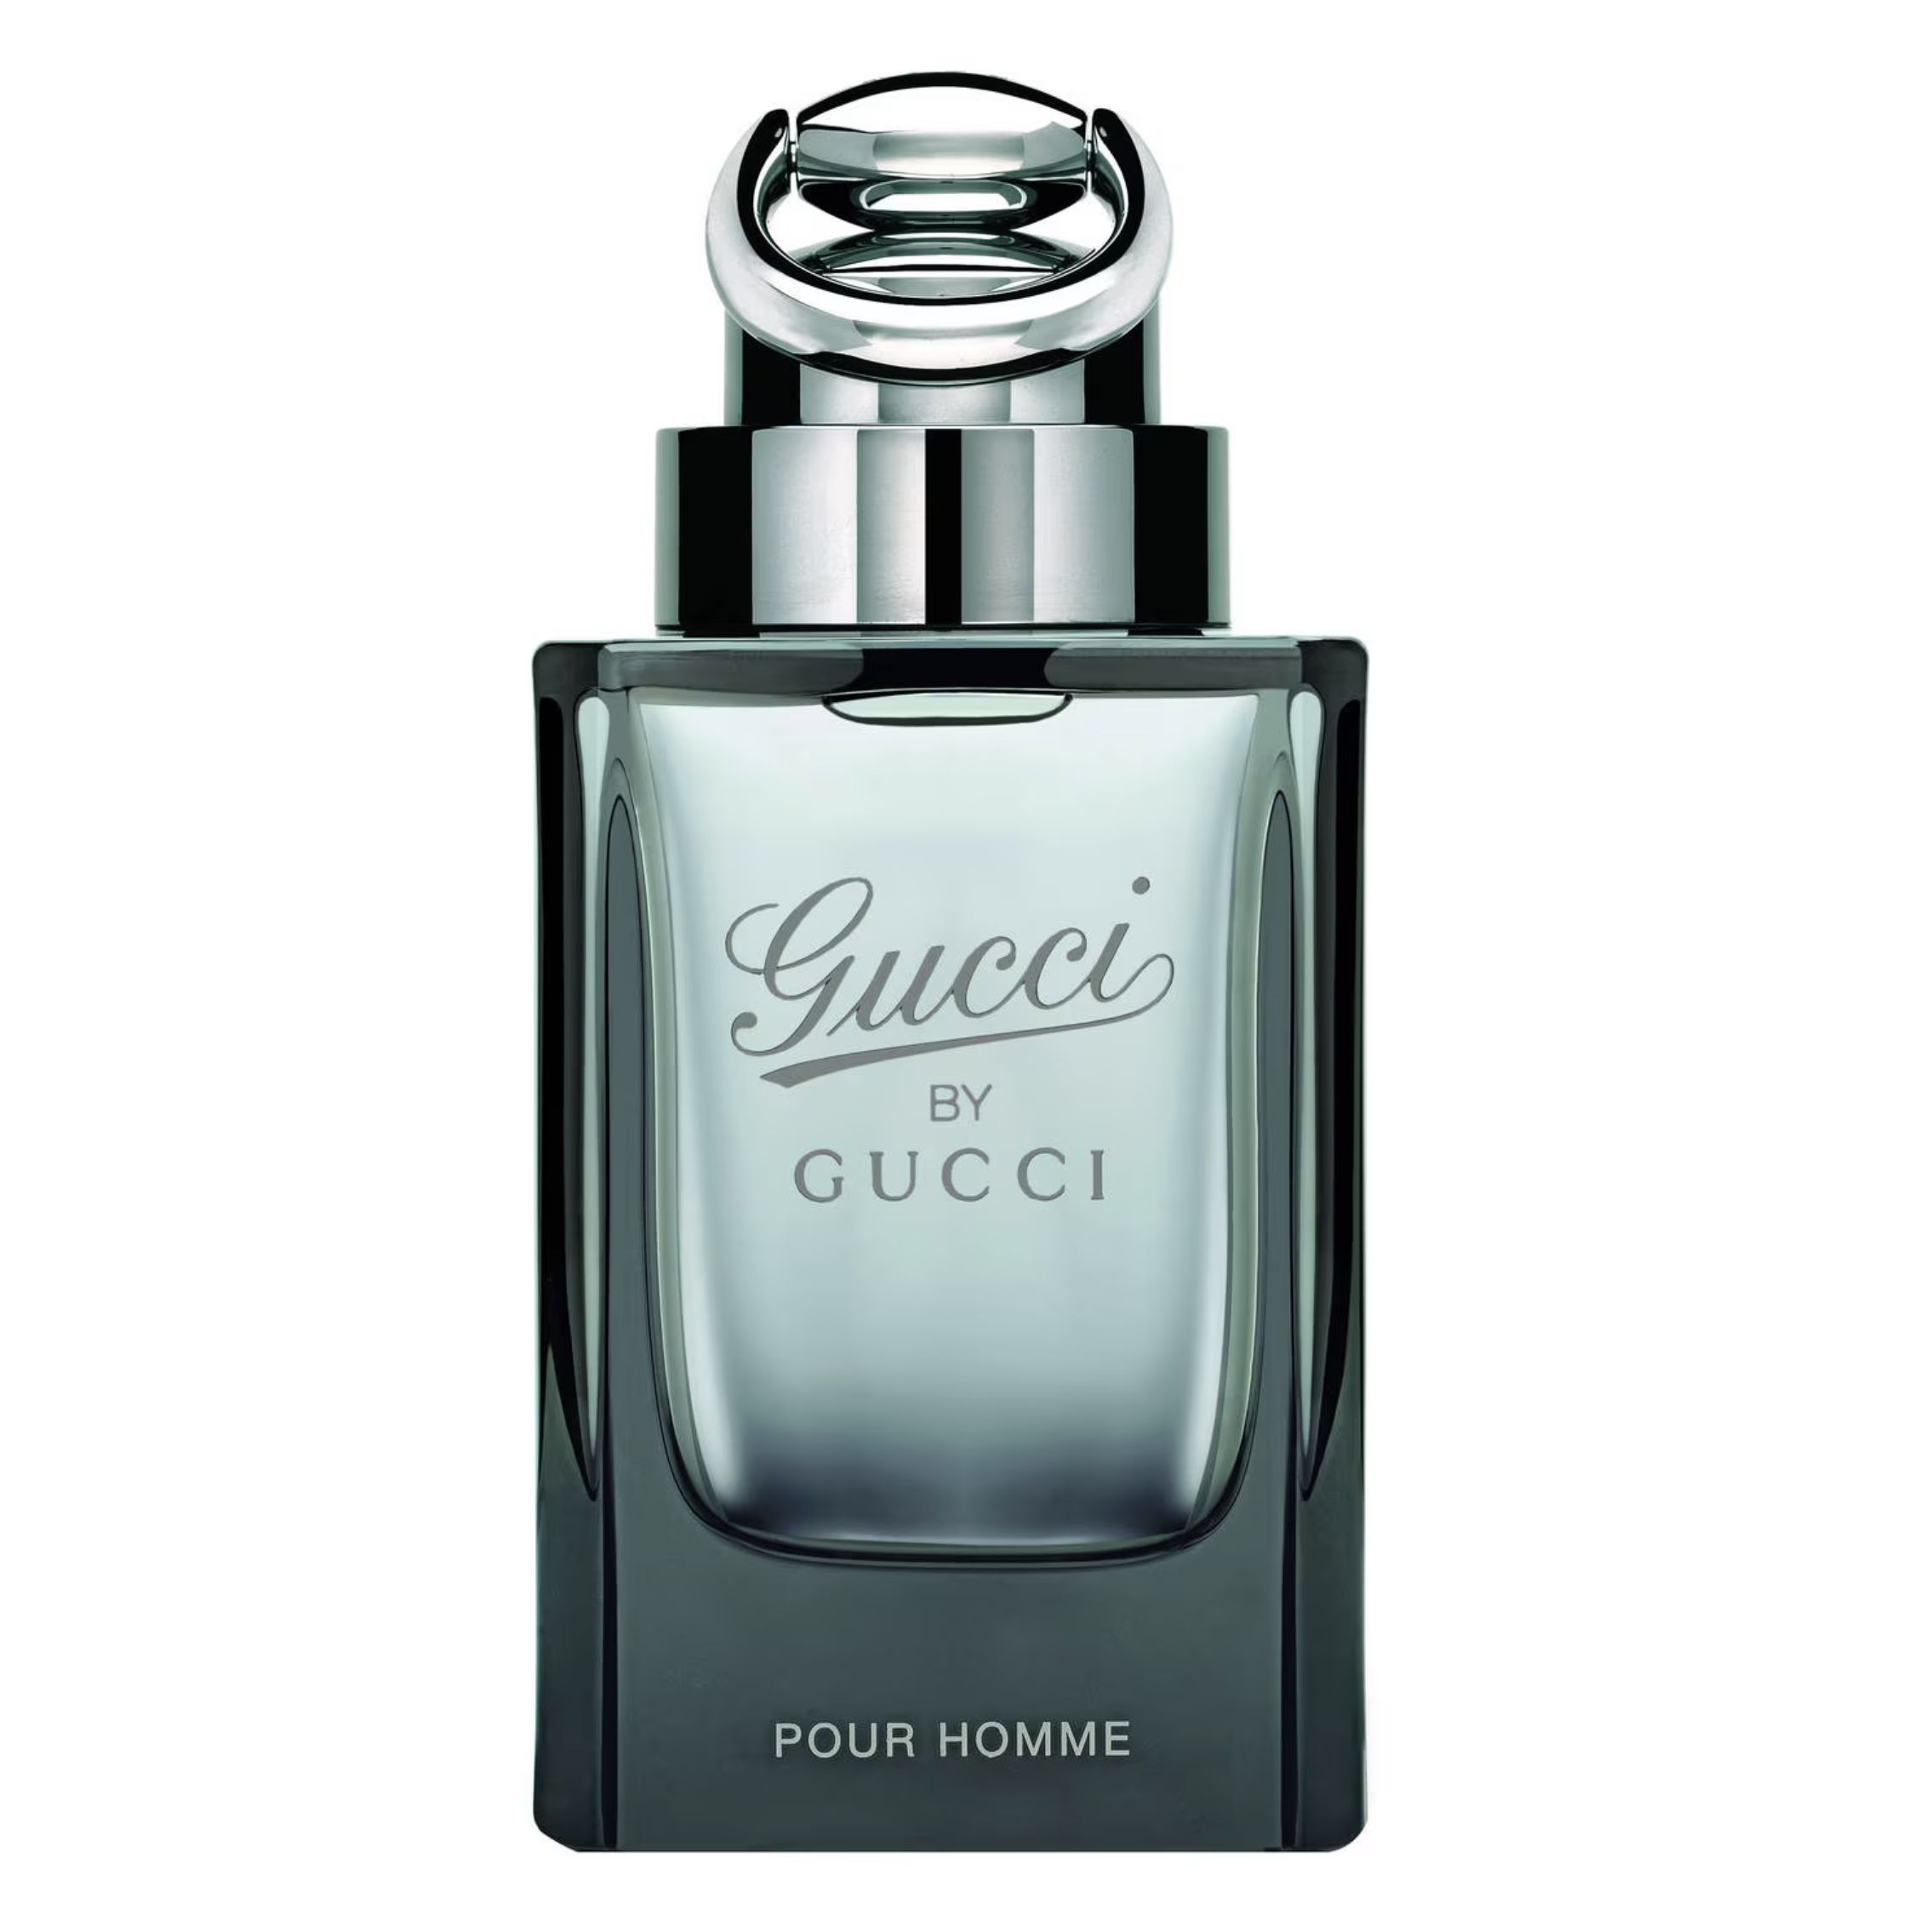 Туалетная вода gucci pour homme. Gucci by Gucci pour homme EDT, 90 ml. Gucci "Gucci by Gucci pour homme". Туалетная вода Gucci Gucci by Gucci pour homme. Gucci pour homme 90 ml.